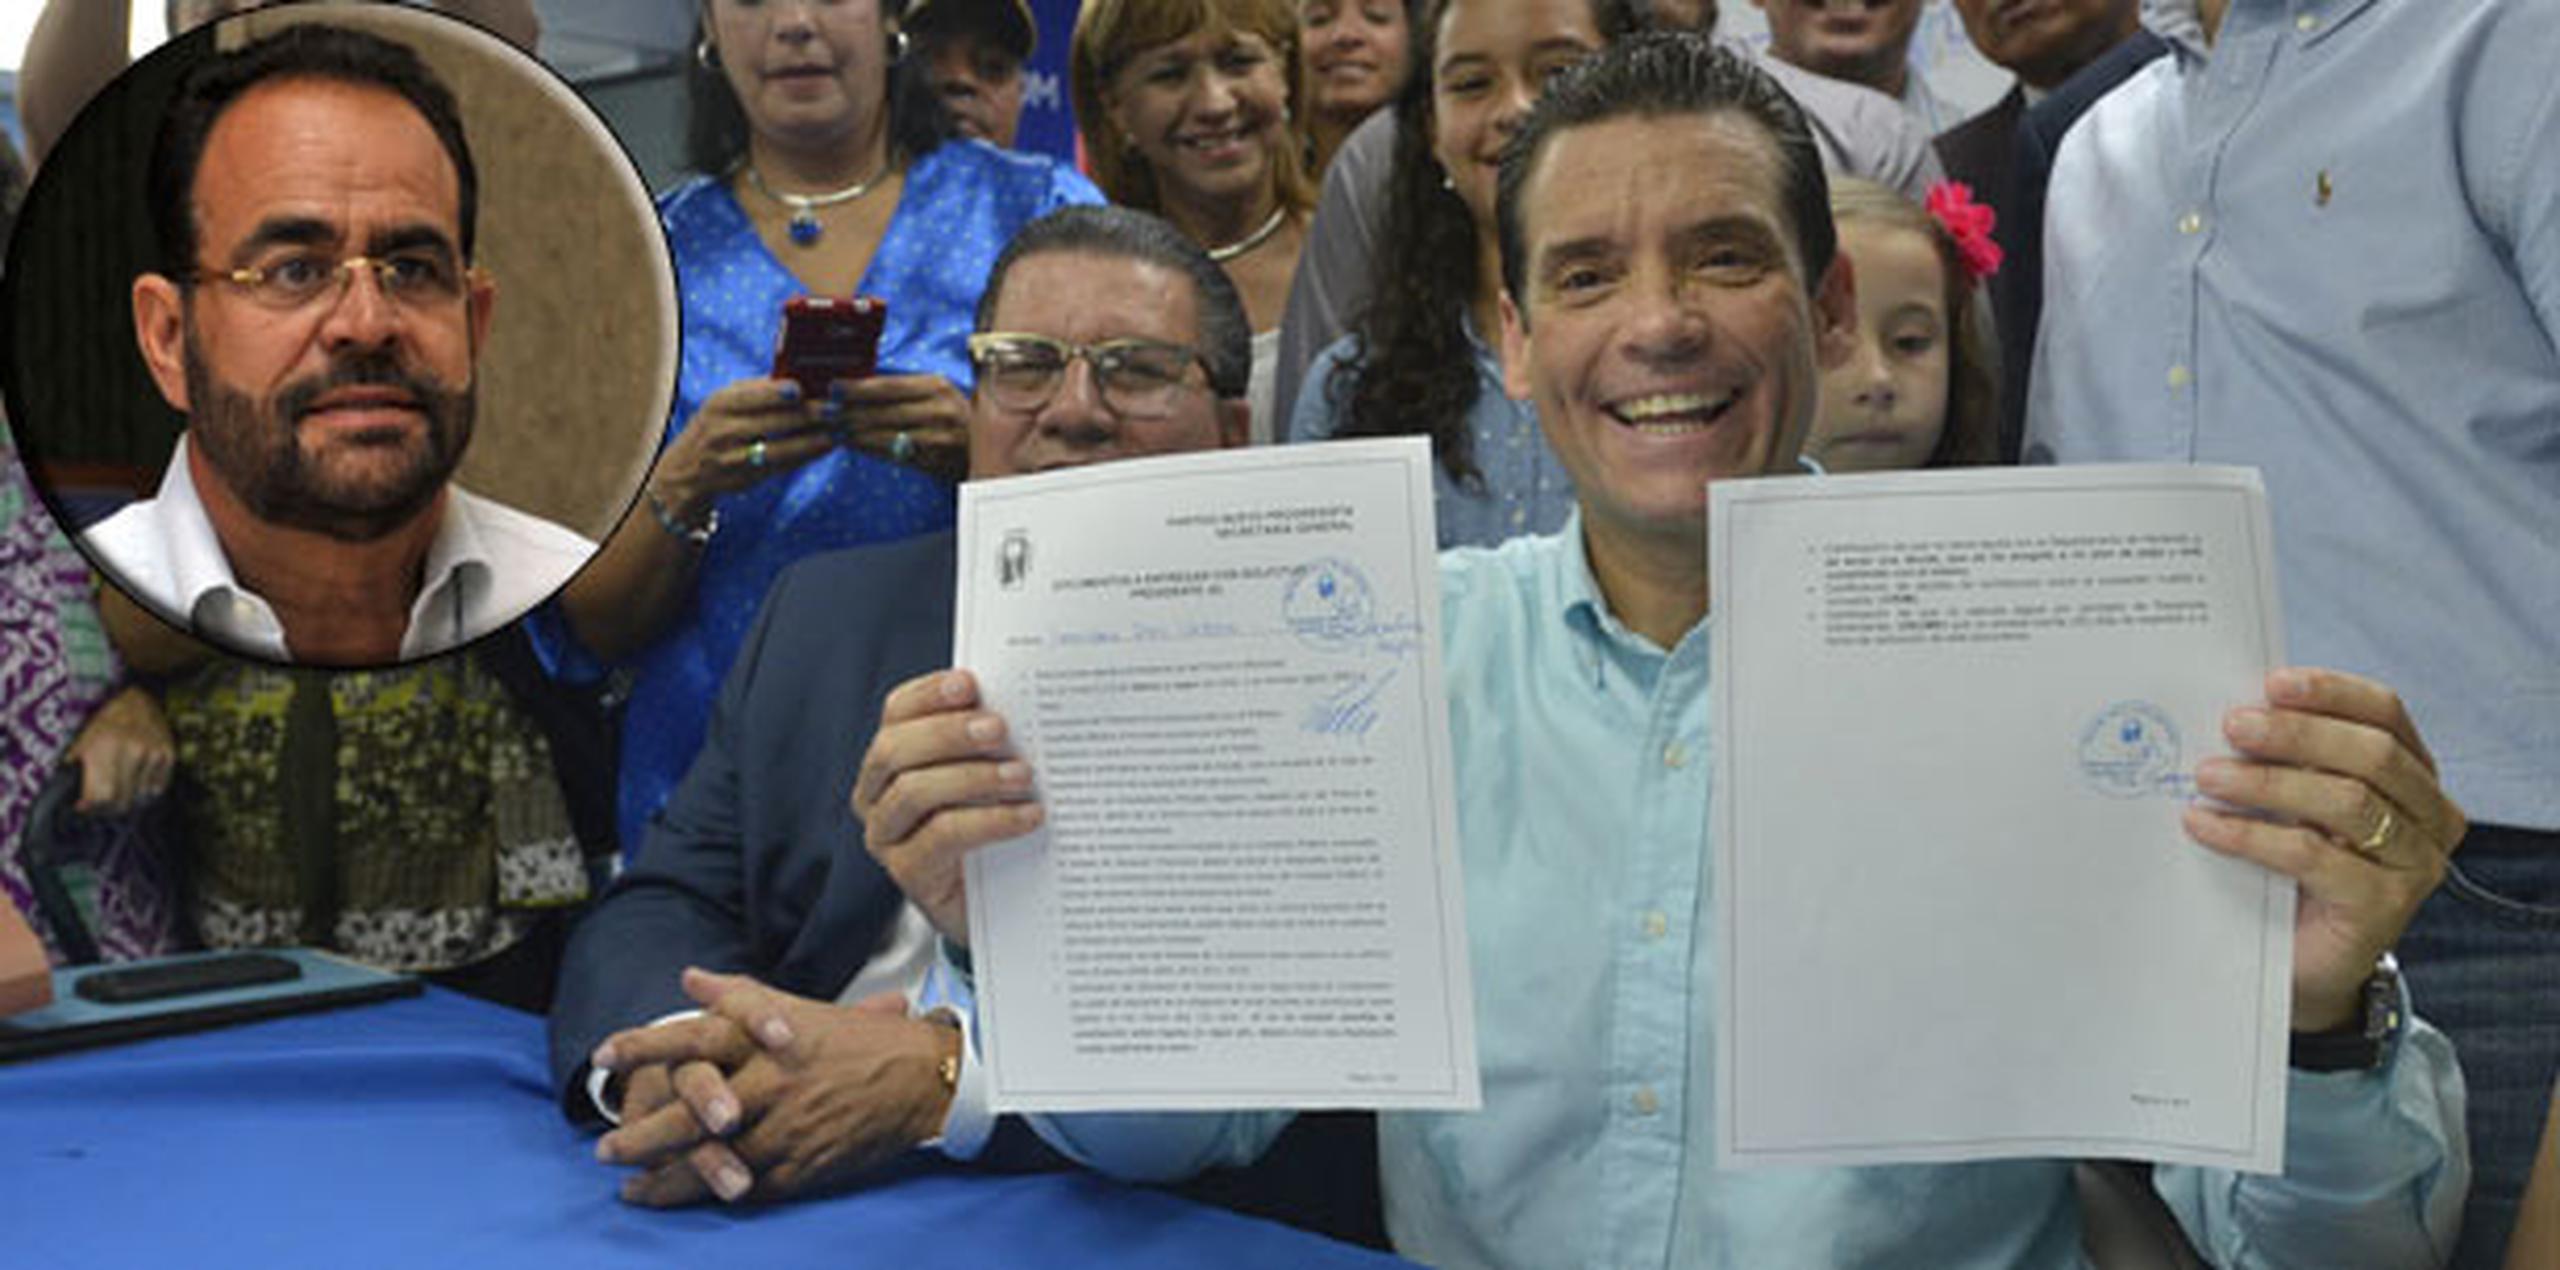 El ex representante Leo Díaz, quien presentó el domingo su candidatura formal a la presidencia del PNP en San Juan, recibe ayuda del alcalde toabajeño Aníbal Vega Borges (recuadro). (Archivo)
